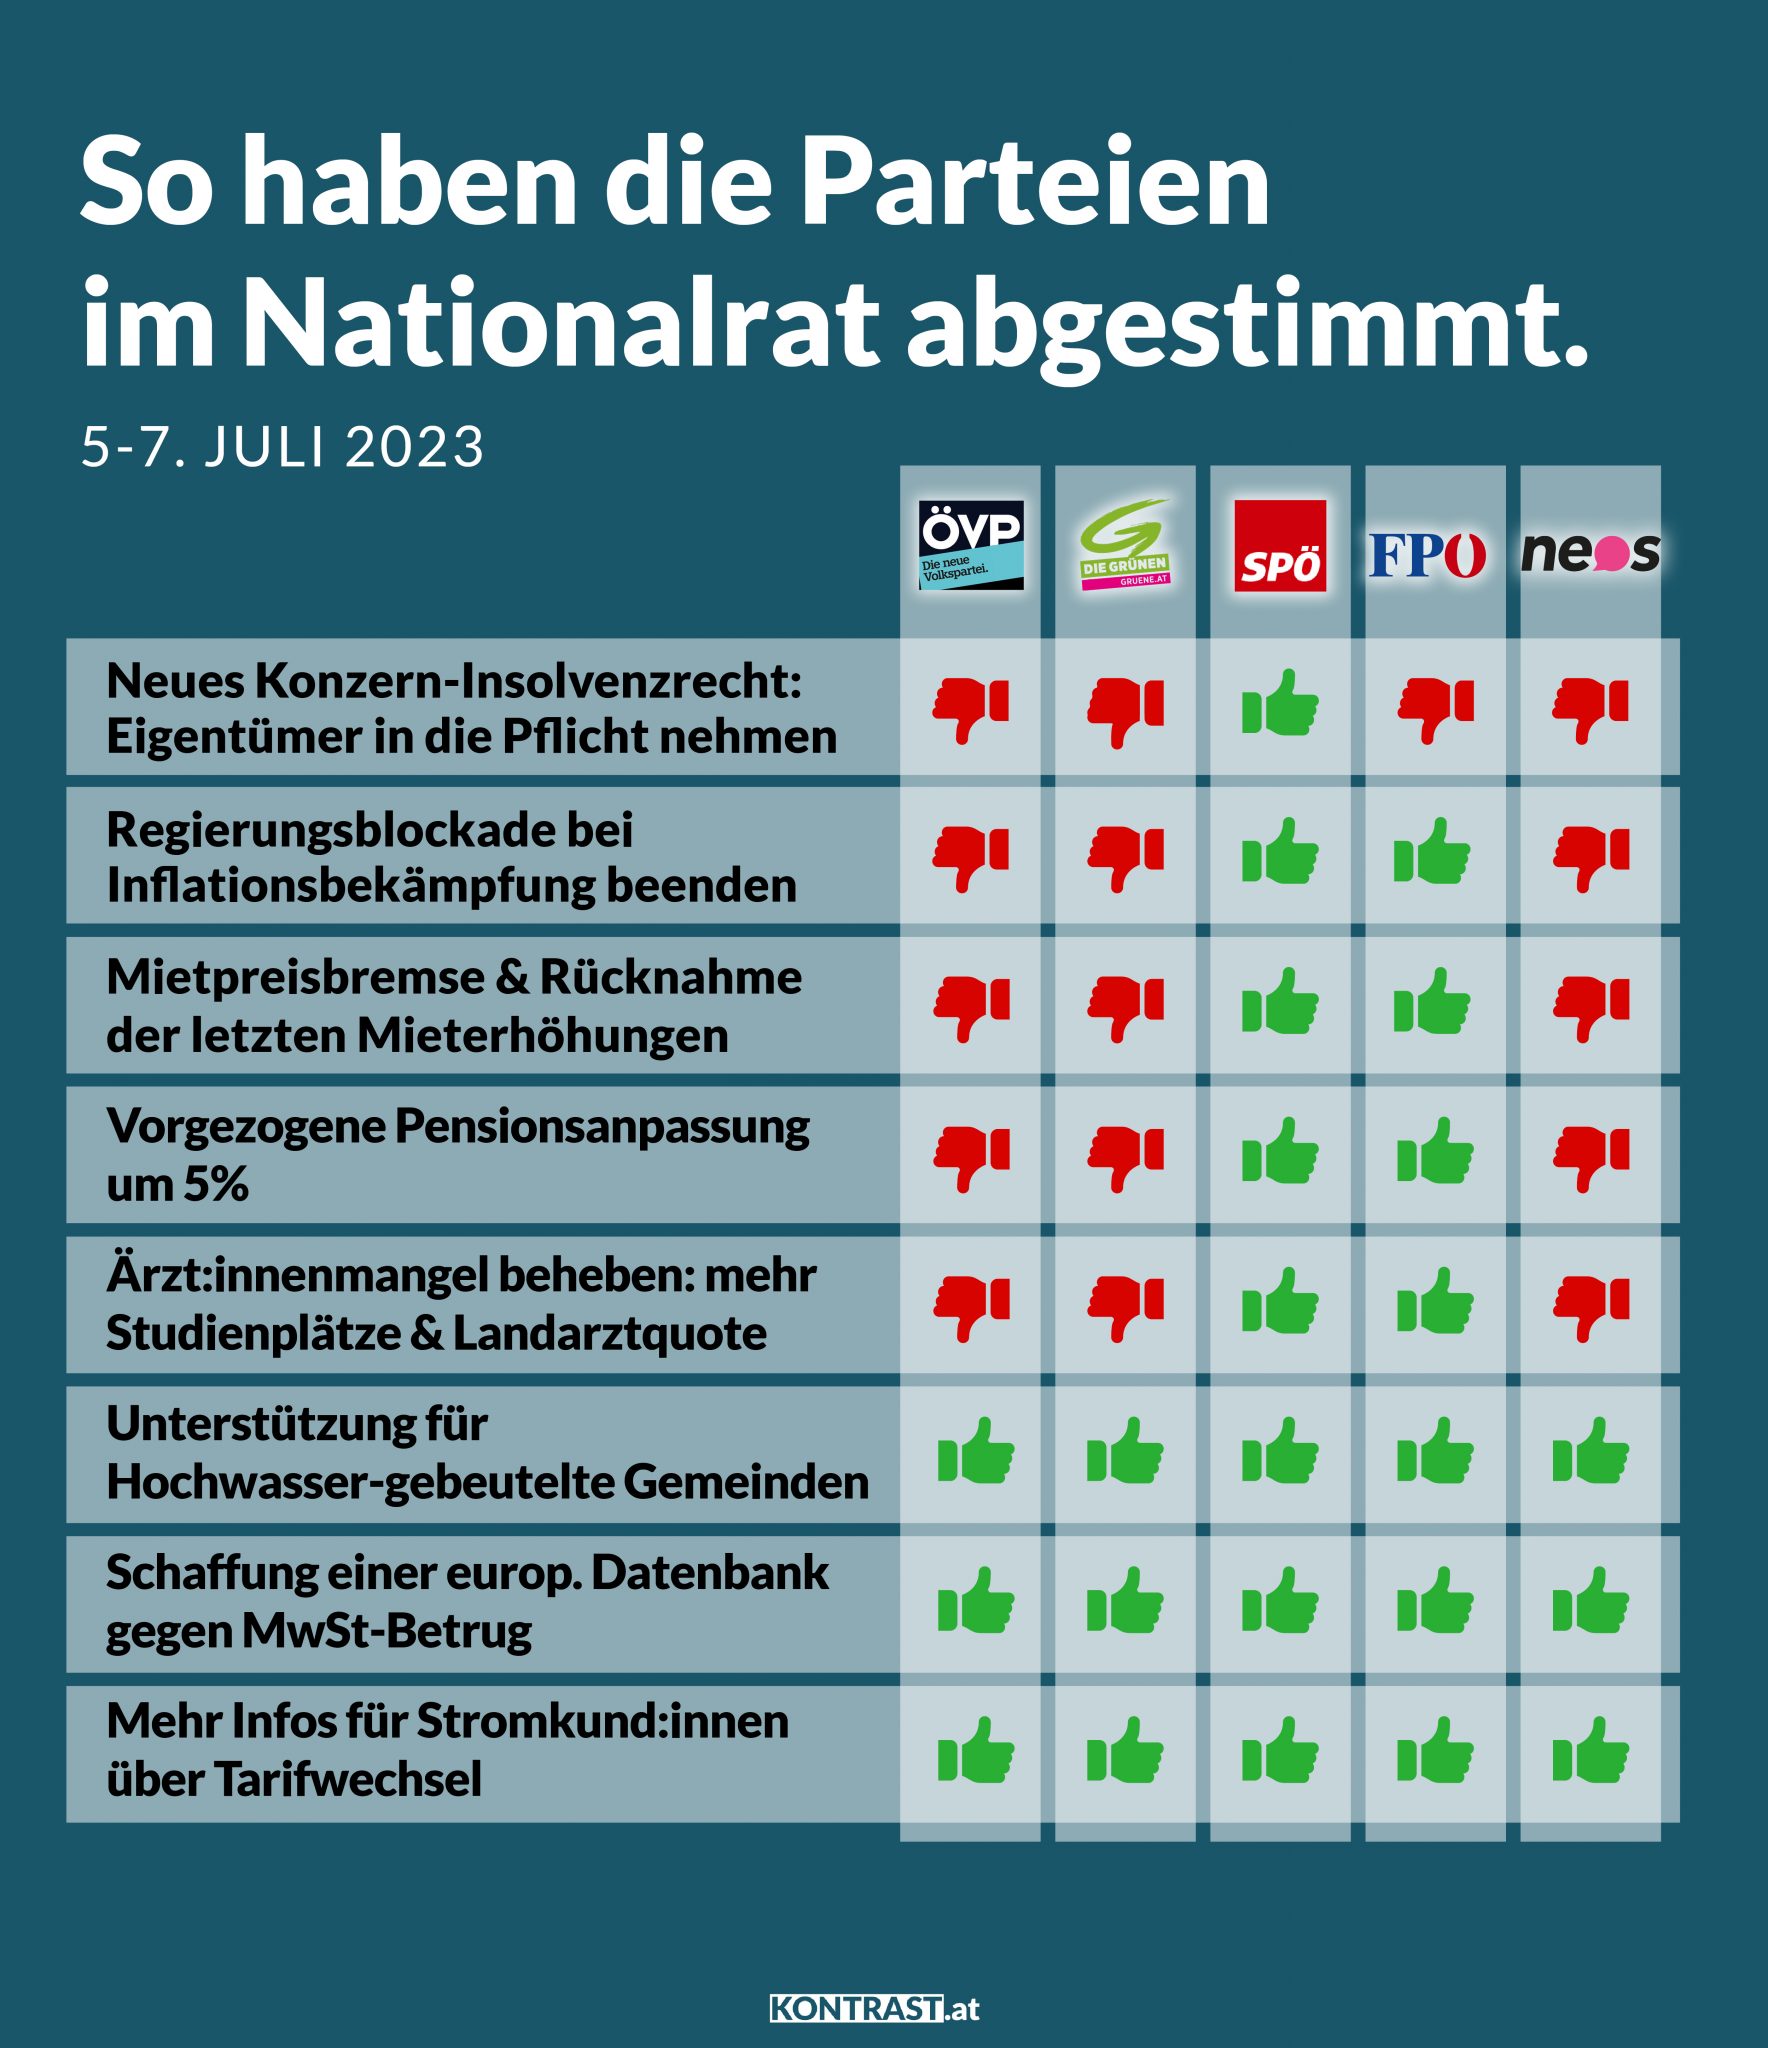 Nationalratssitzung 5.-7. Juli 2023: So haben die Parteien abgestimmt